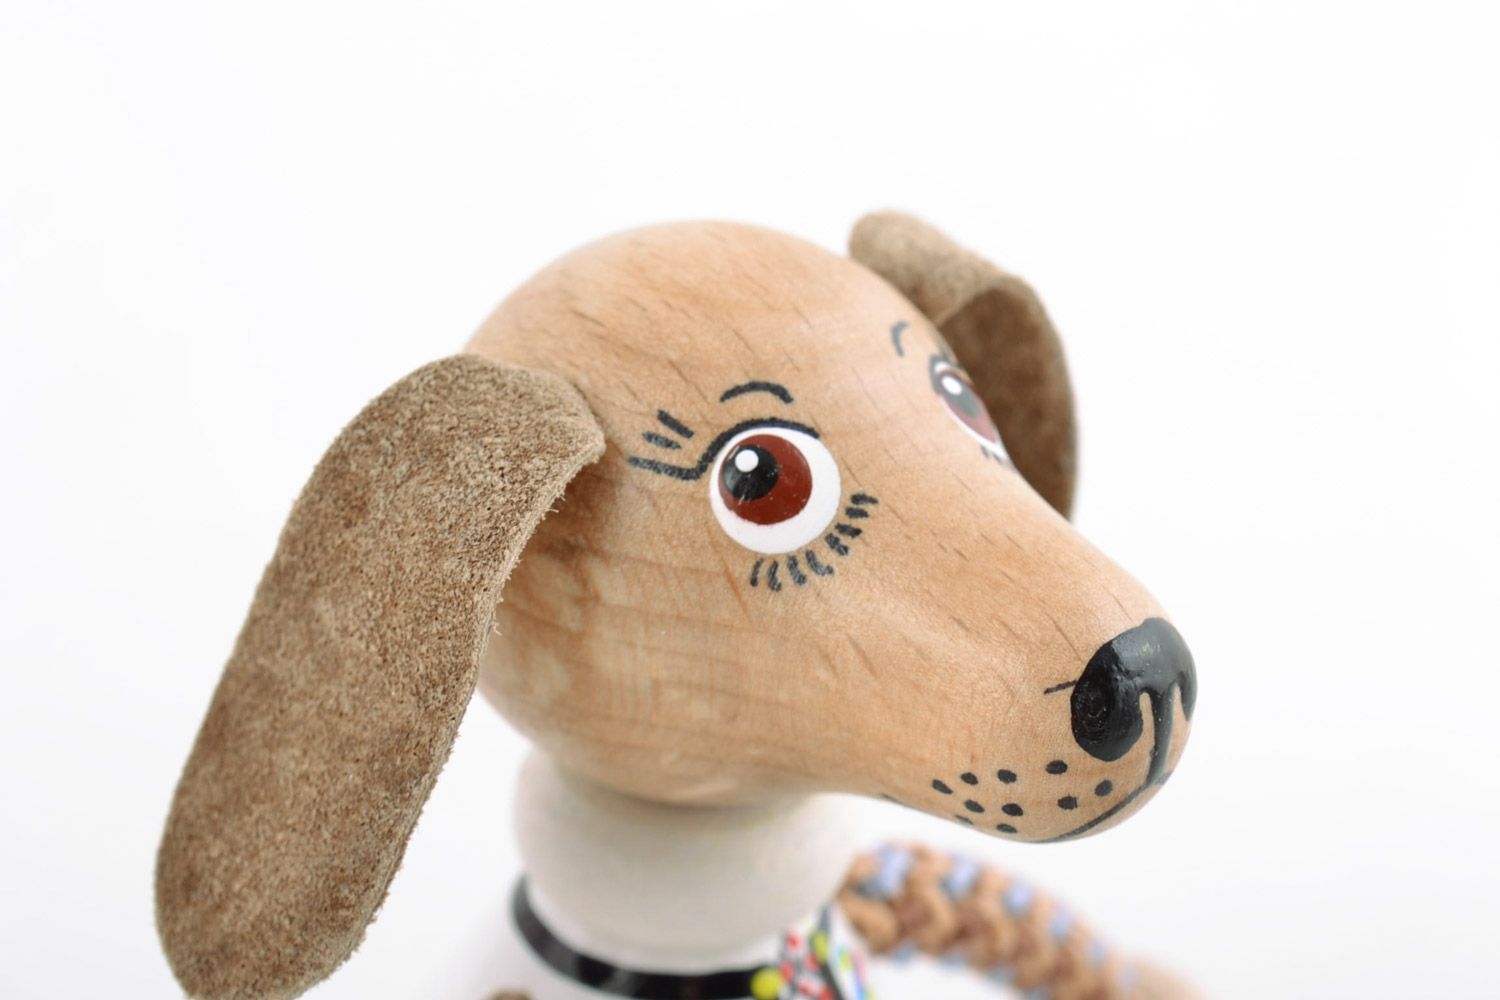 Öko Holz Spielzeug Hund grell schön Handarbeit Geschenk für Kinder foto 3